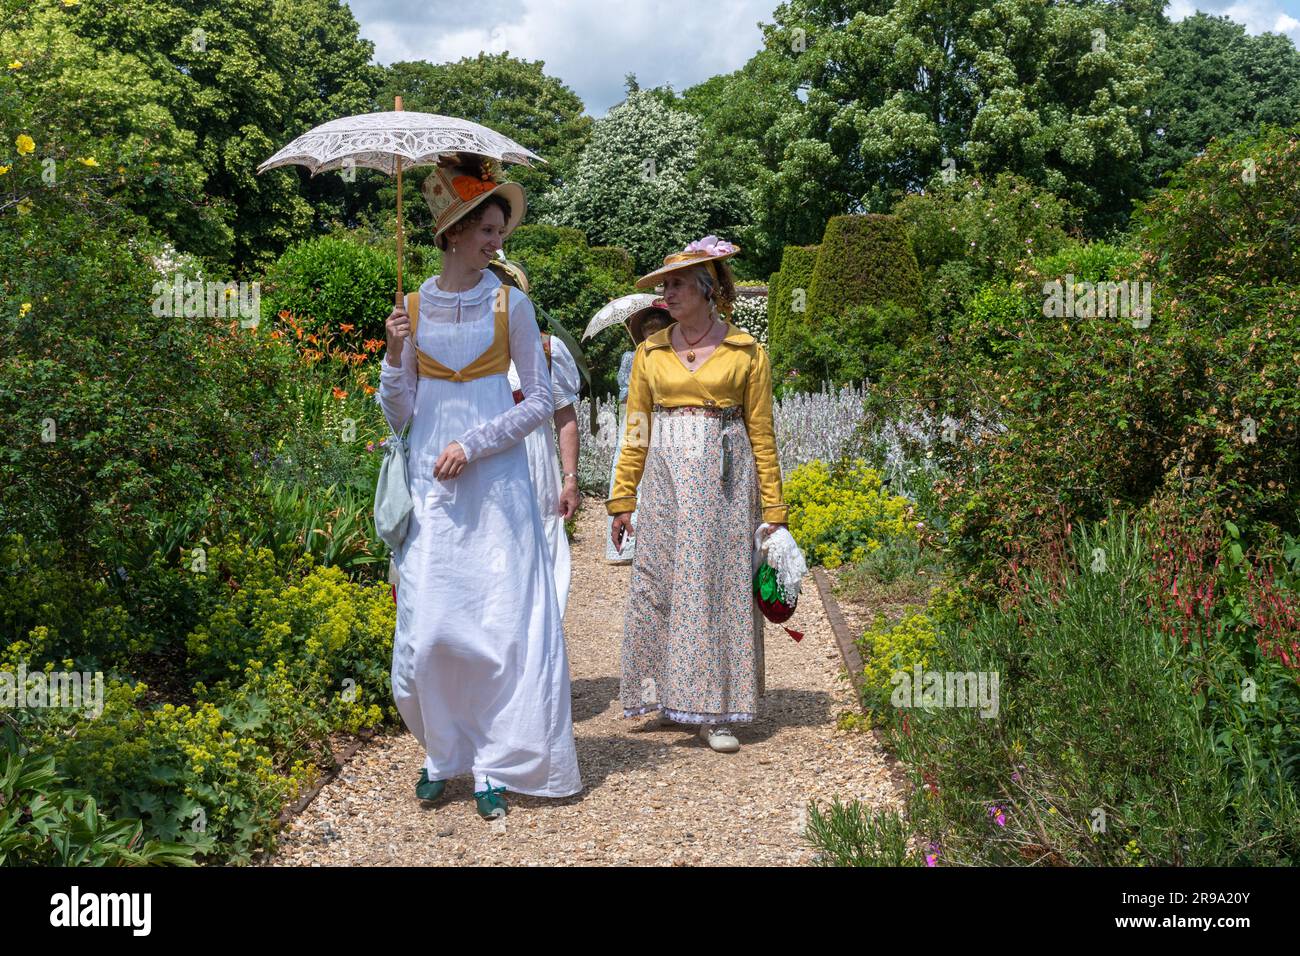 Señoras vestidas con vestidos victorianos vintage o disfraces caminando a través de un jardín inglés en verano llevando sombrillas, Inglaterra, Reino Unido Foto de stock